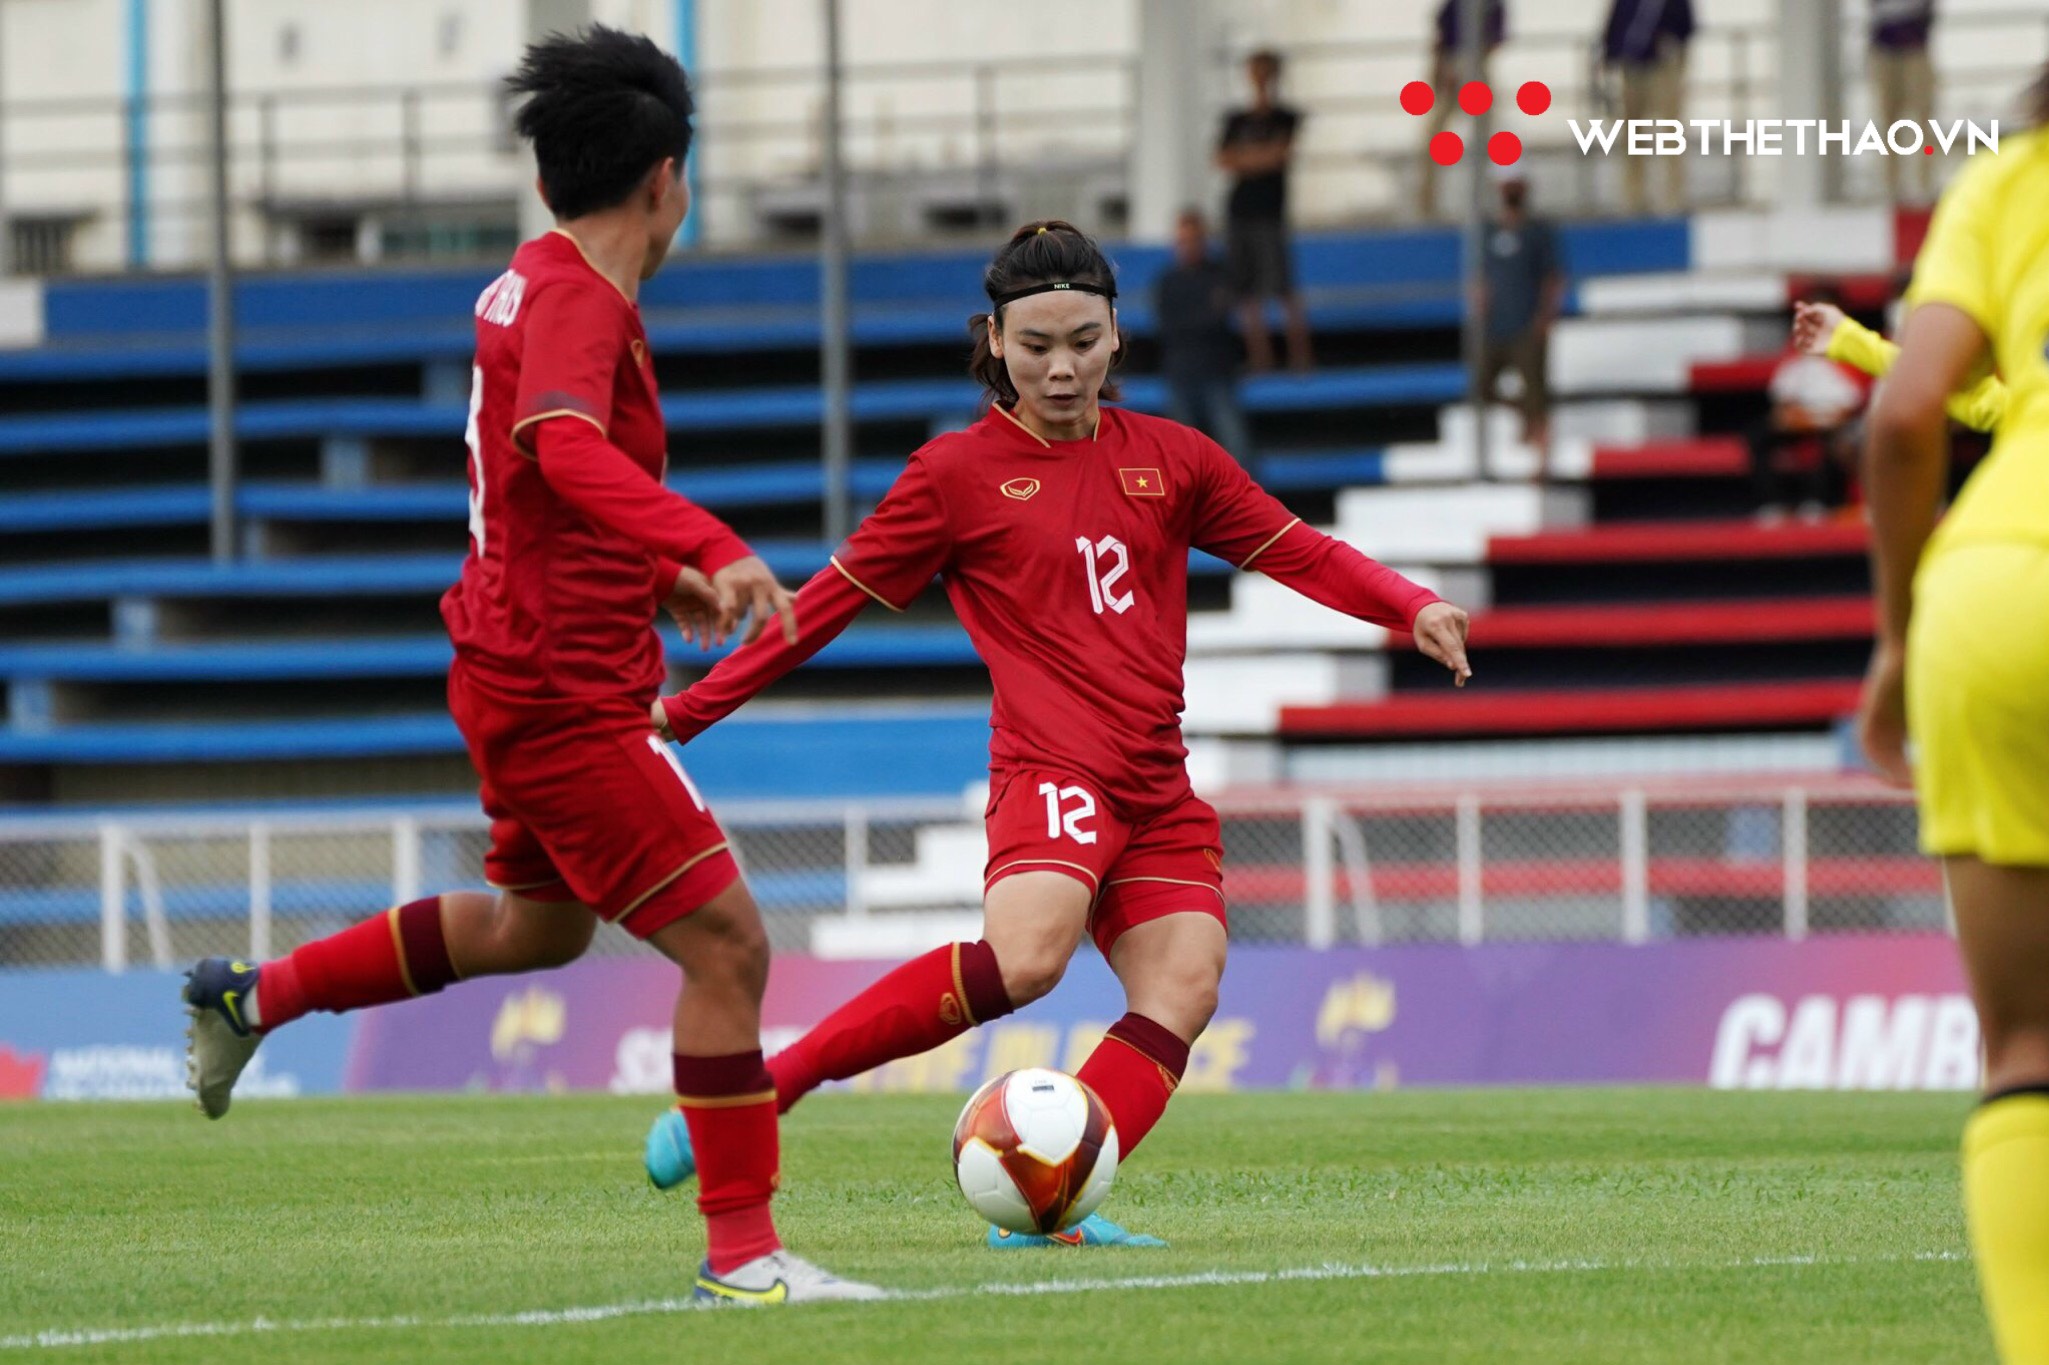 Hải Yến ghi bàn ở 4 kỳ SEA Games liên tiếp, tuyển nữ Việt Nam thắng dễ Malaysia